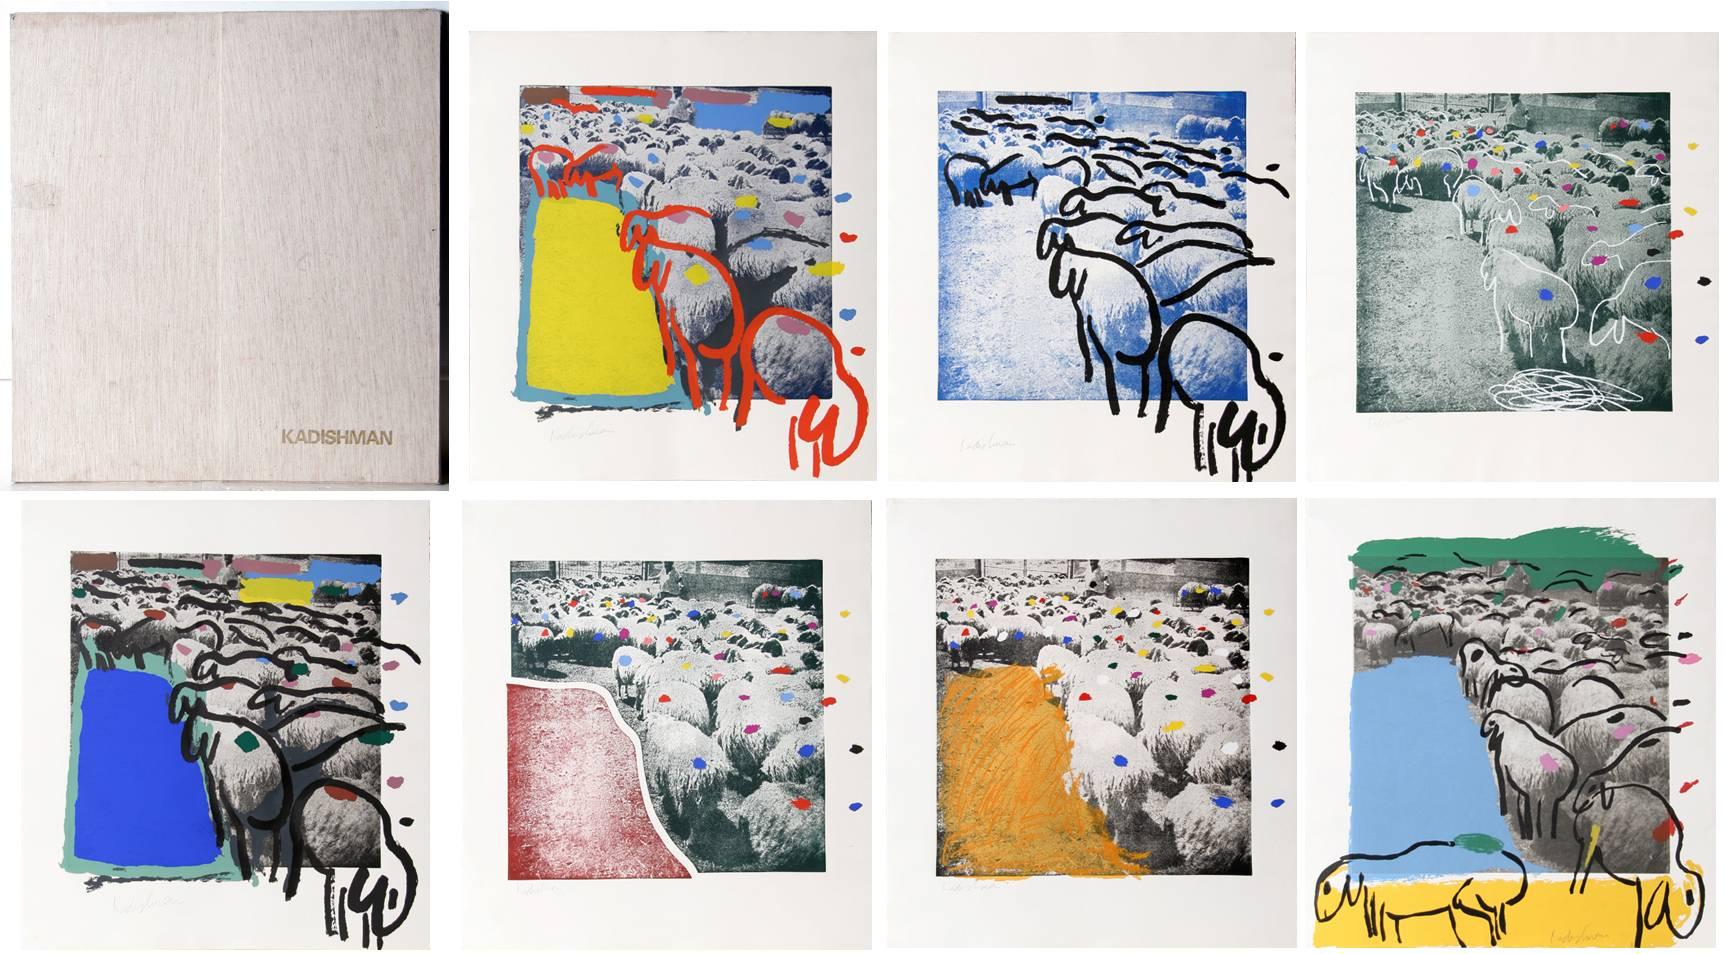 Künstler:  Menashe Kadishman, Israeli (1932 - 2015)
Titel: Portfolio Schafe
Jahr: 1981
Medium: Mappe mit 7 Serigraphien mit Radierung, jeweils mit Bleistift signiert
Auflage: 65, AP 5
Größe von jedem: 33,5 x 31 Zoll (85,09 x 78,74 cm)

Gedruckt von